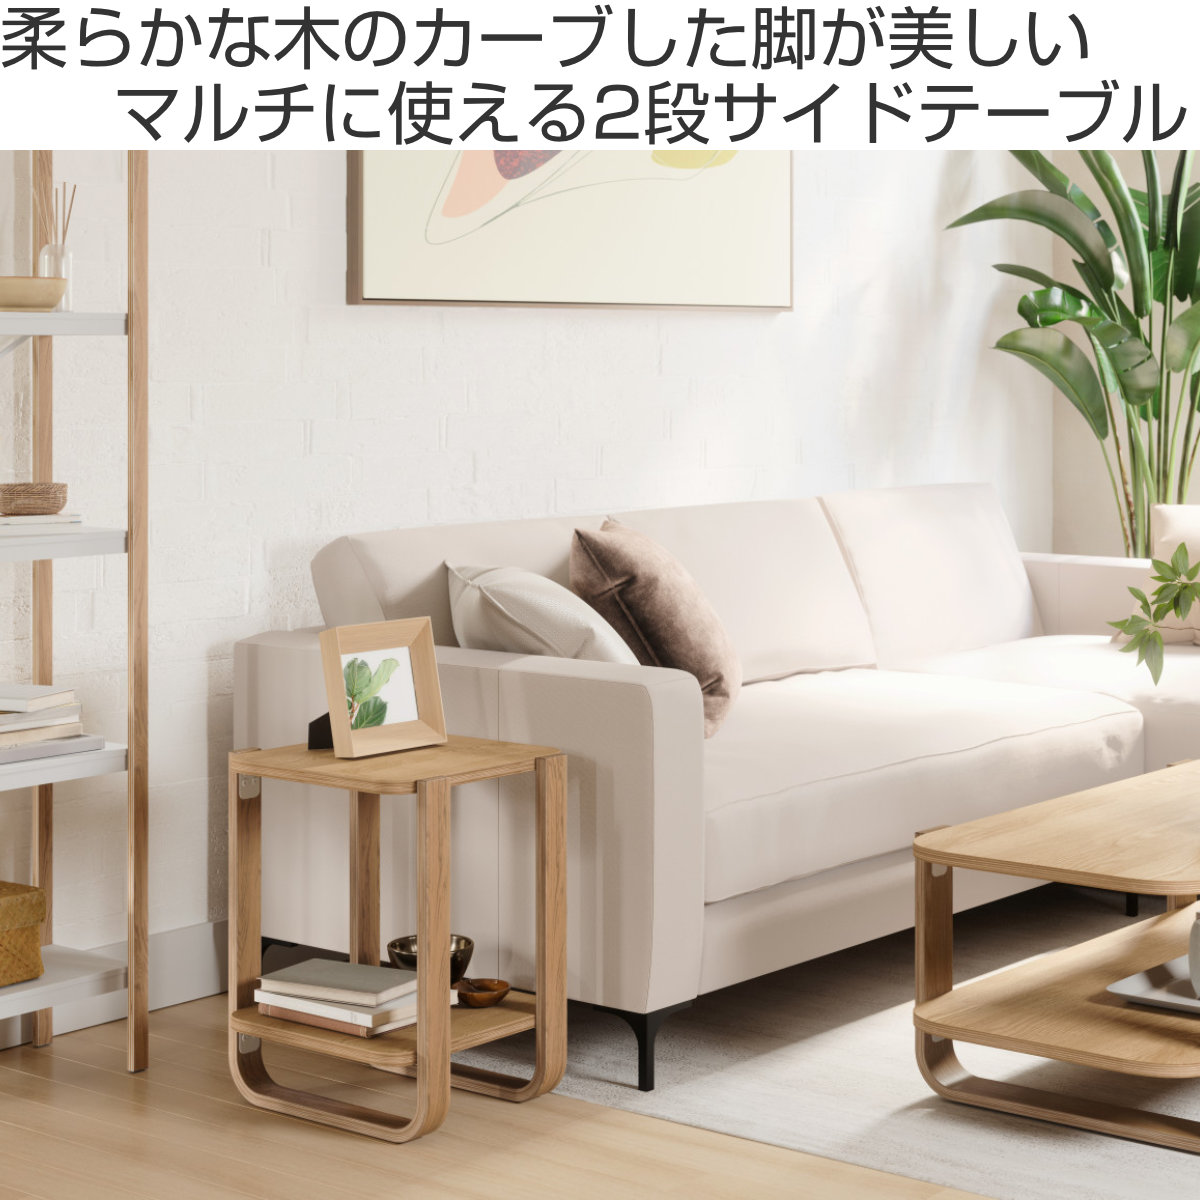 木製 ベッドサイド テーブル ソファー リビング コーヒー サイド ナイト 木